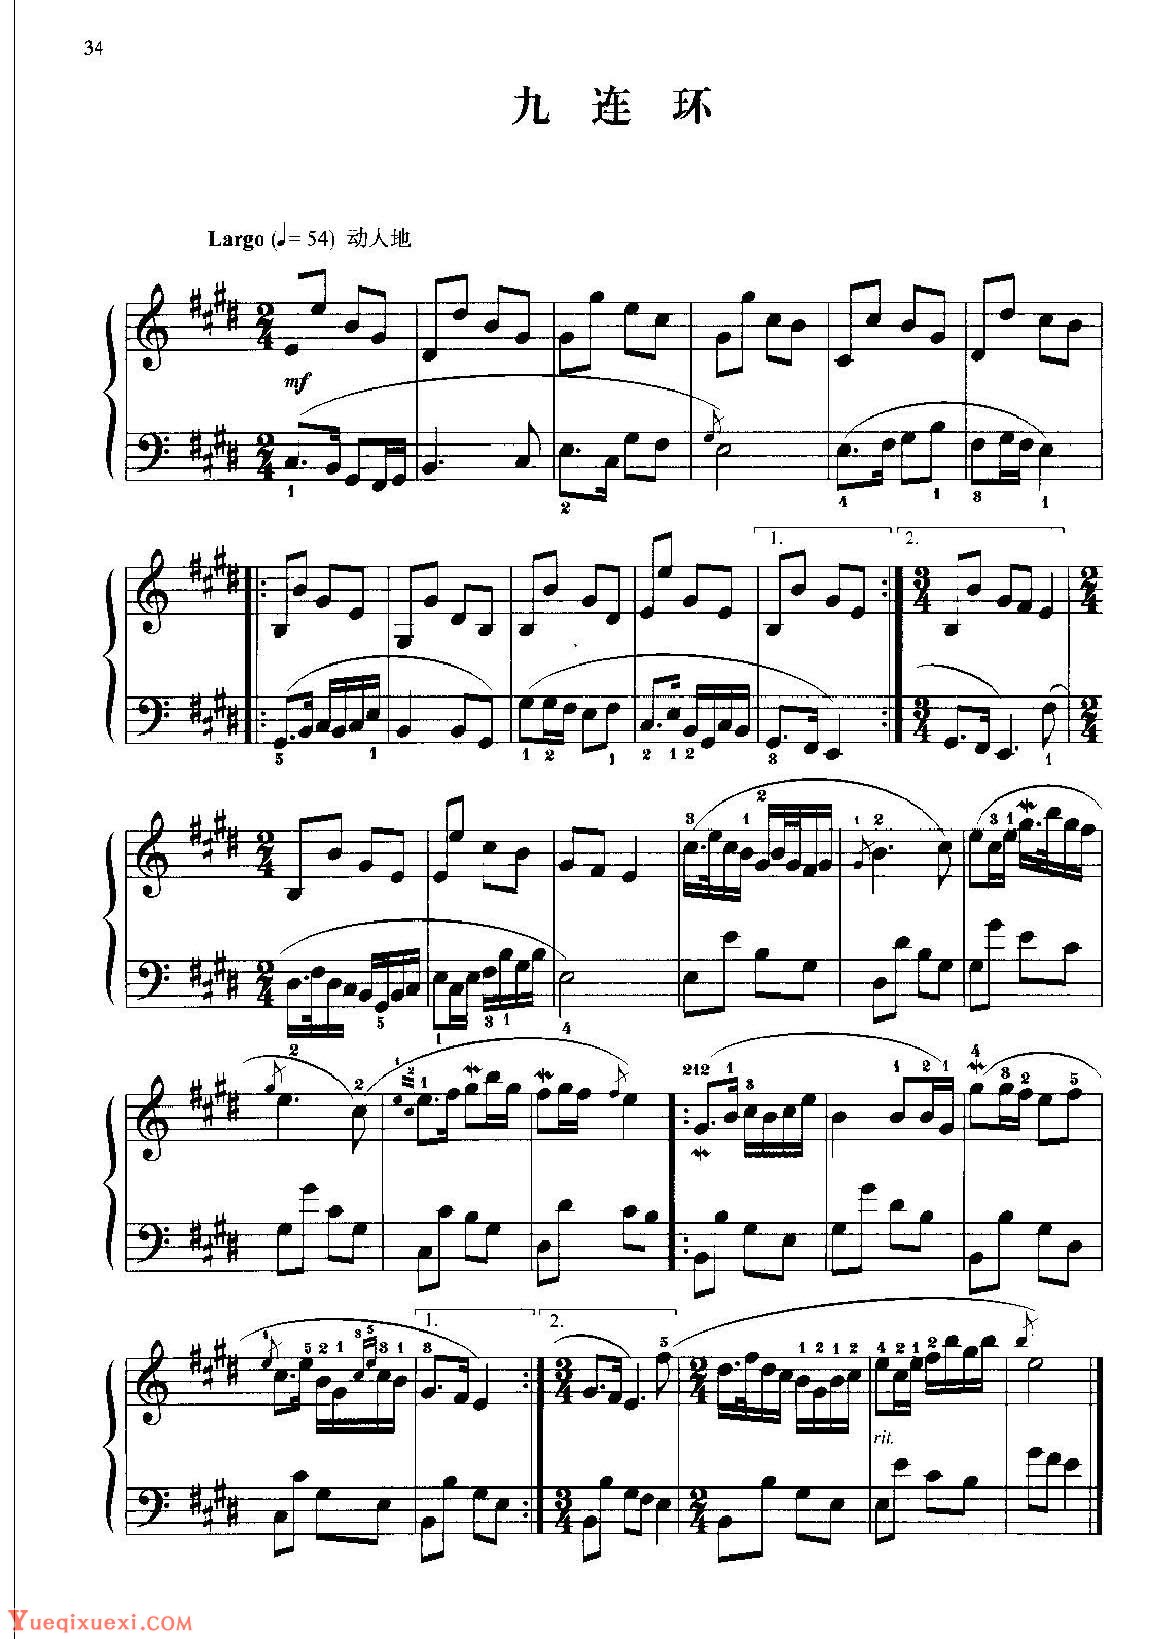 中国民歌钢琴小曲《九连环》